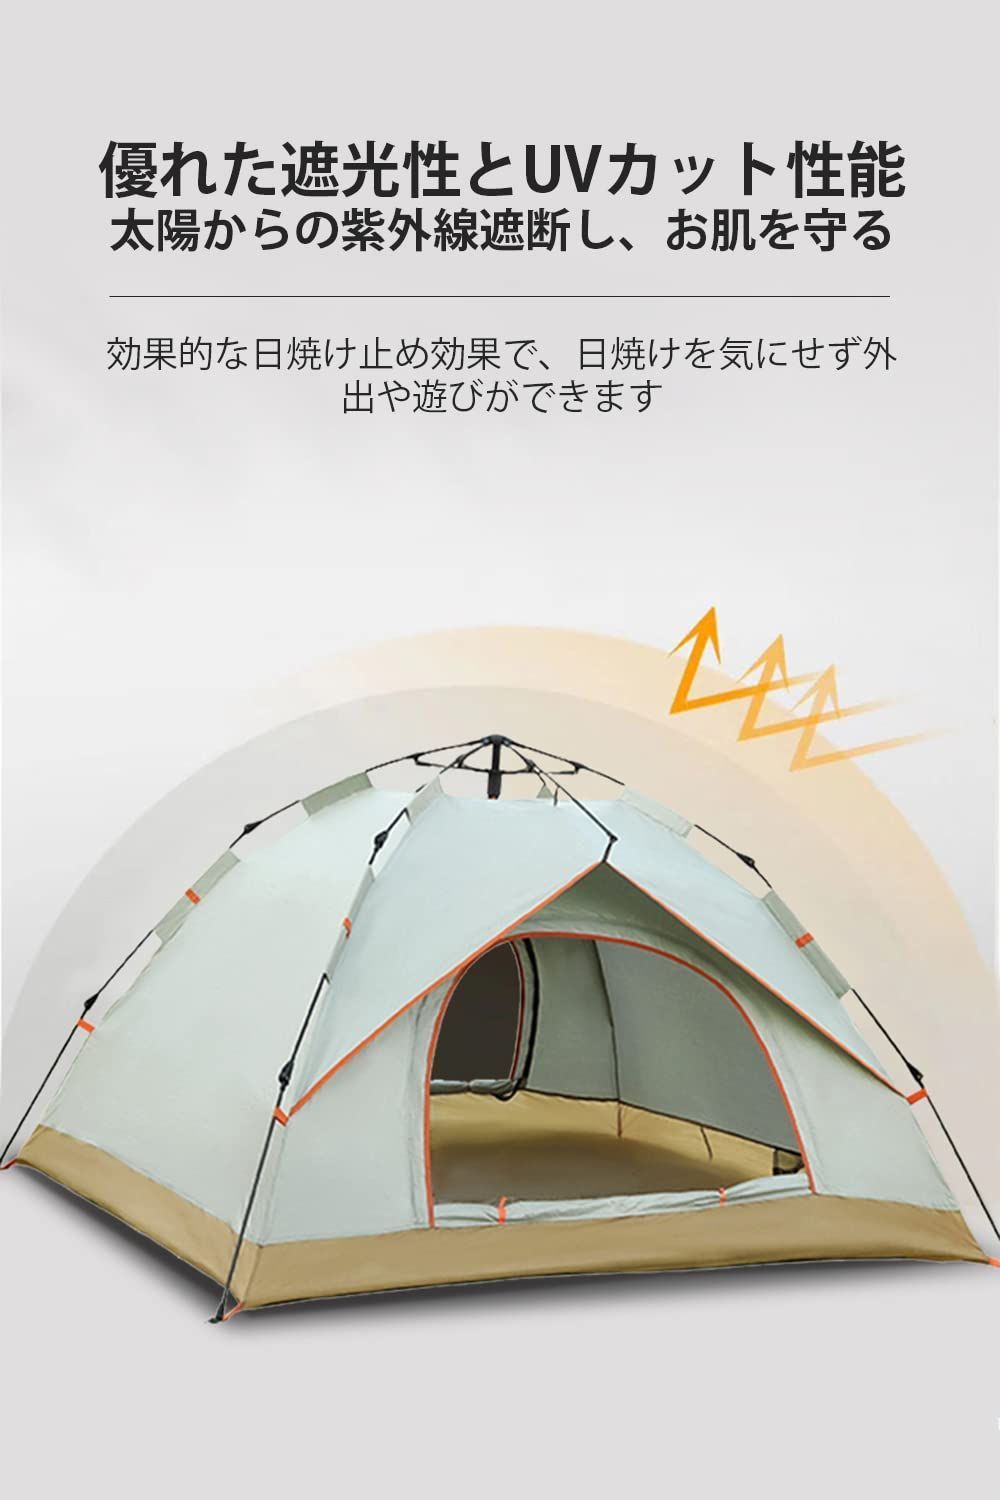 Le Dzx テント キャンプテント ワンタッチ 3~4人用 簡単設営 uvカット 